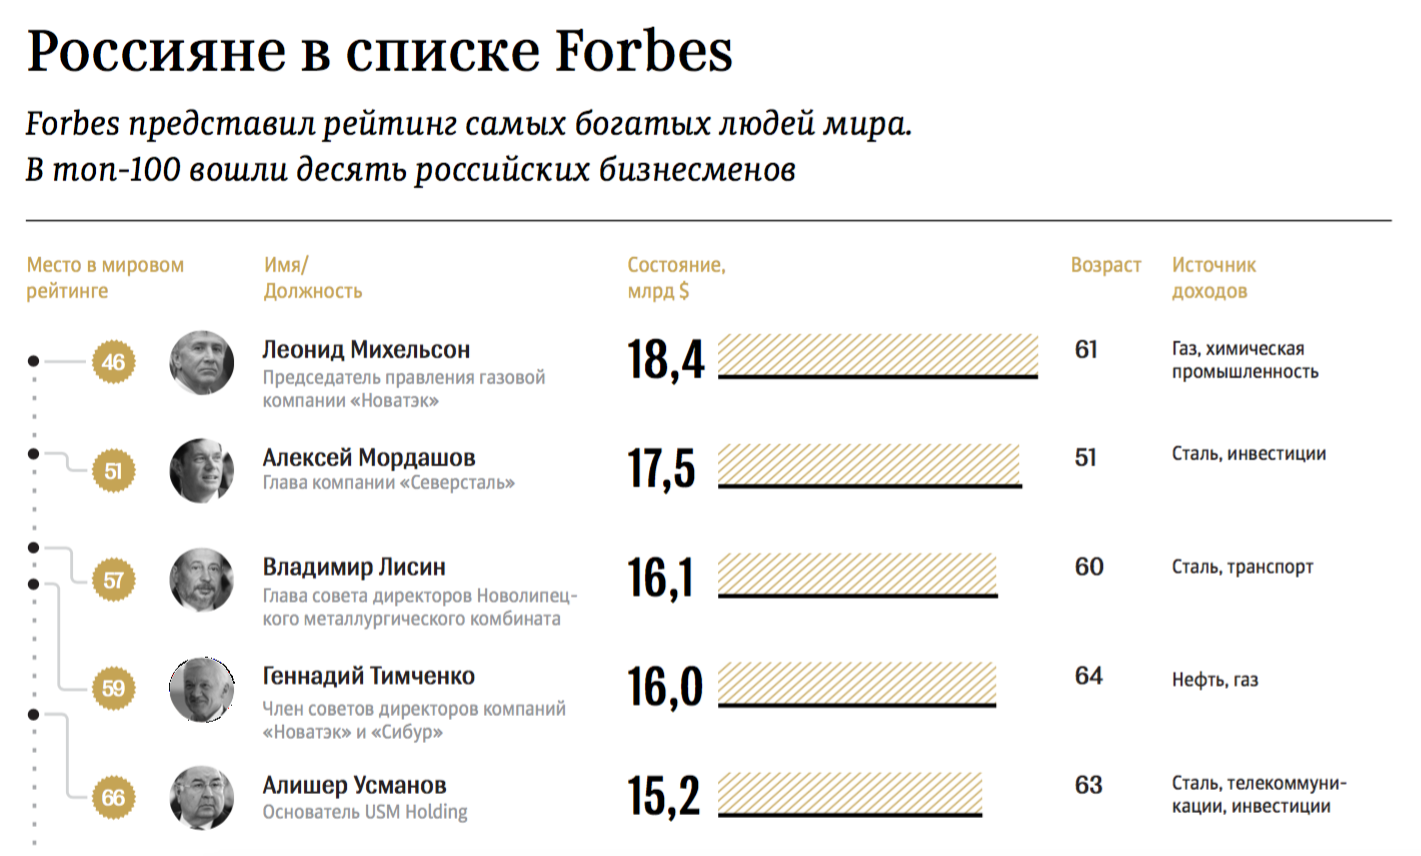 Богатейшие люди россии в 2019 году по версии forbes